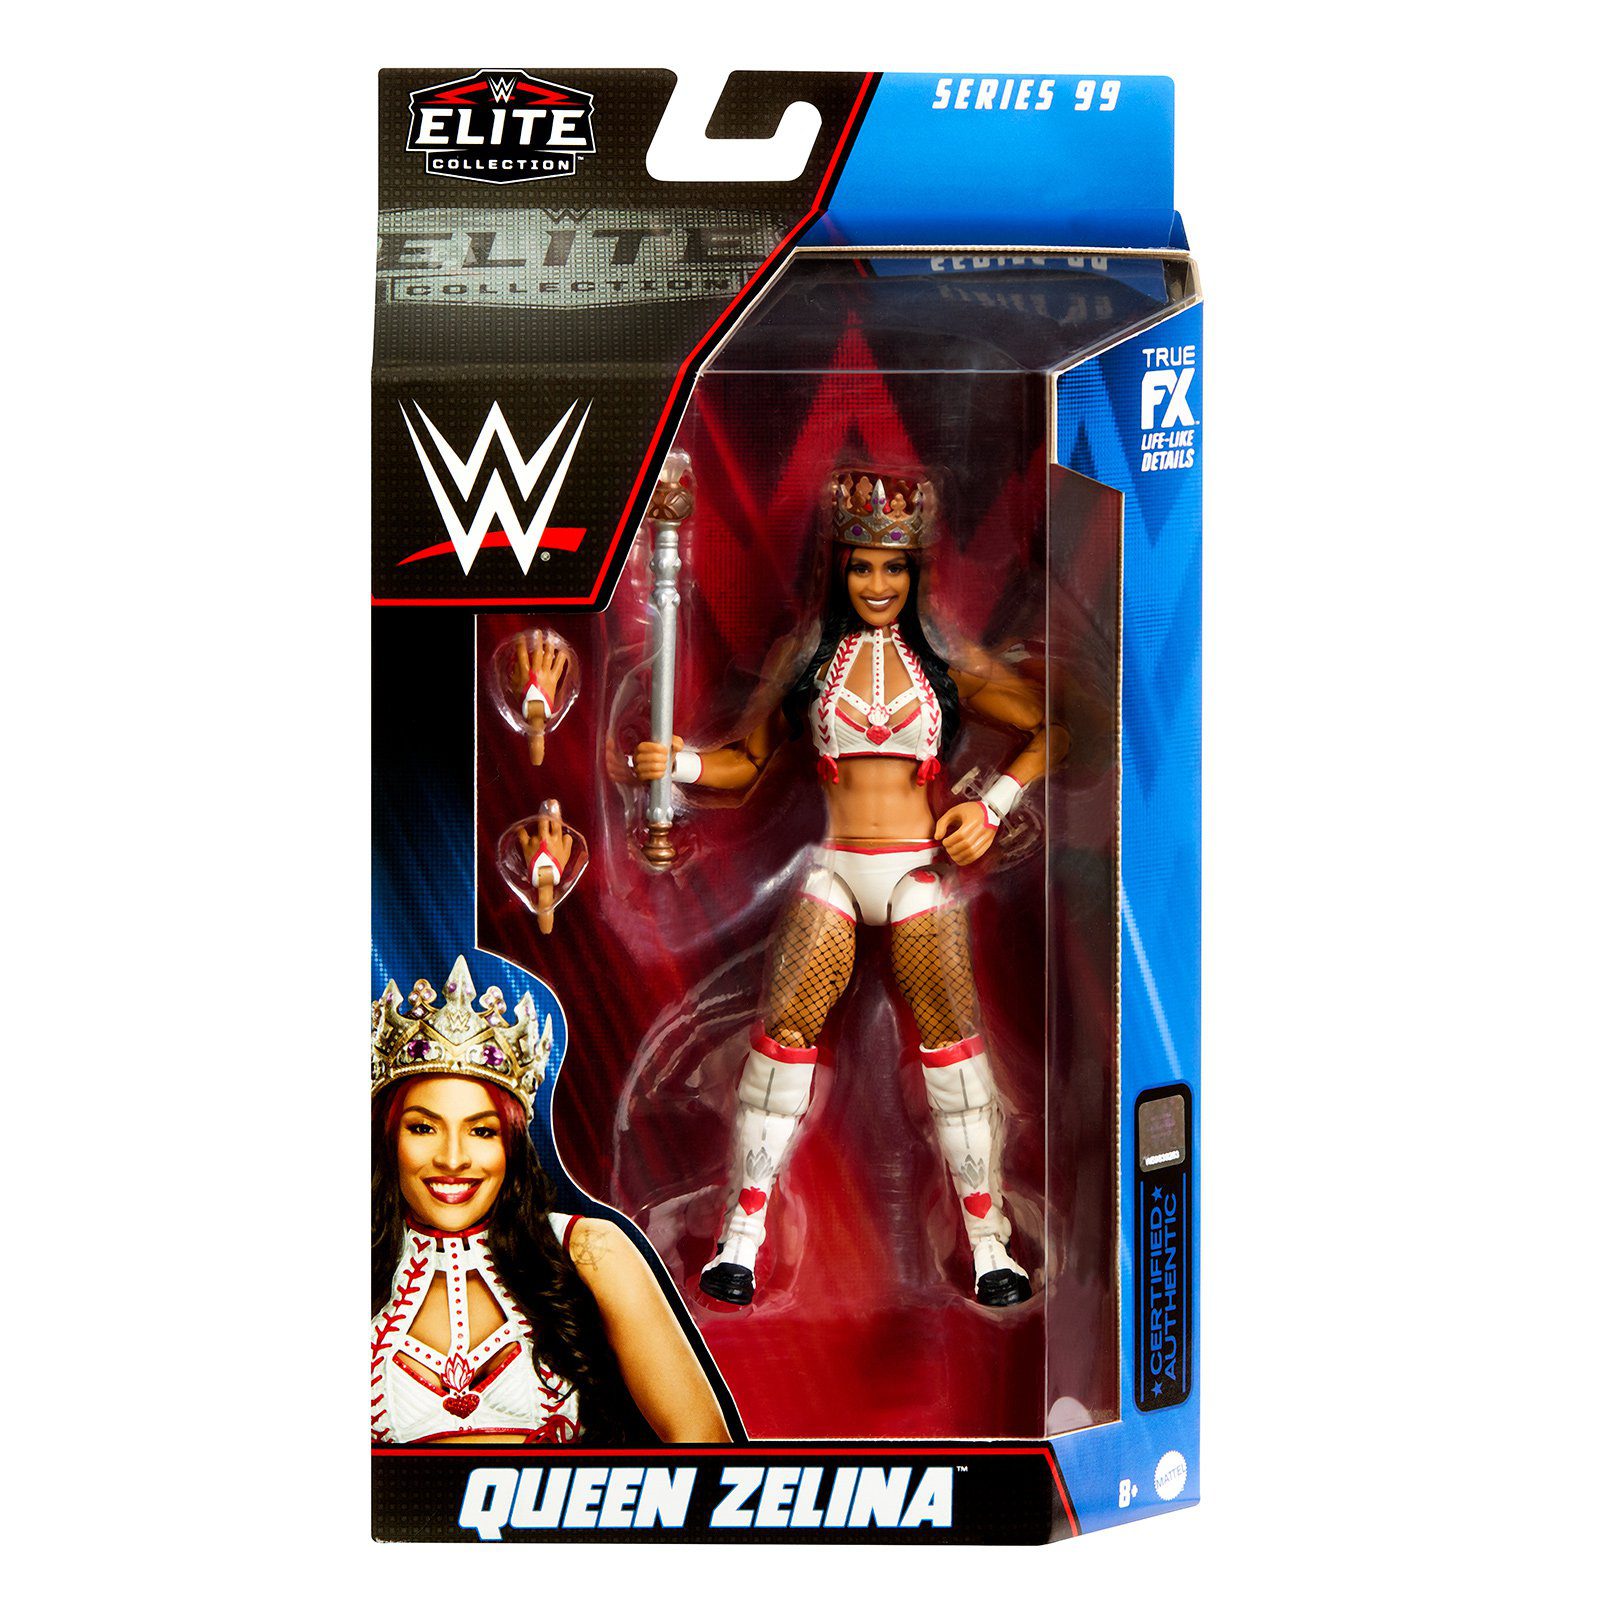 WWE Elite Series 99 Queen Zelina Figure